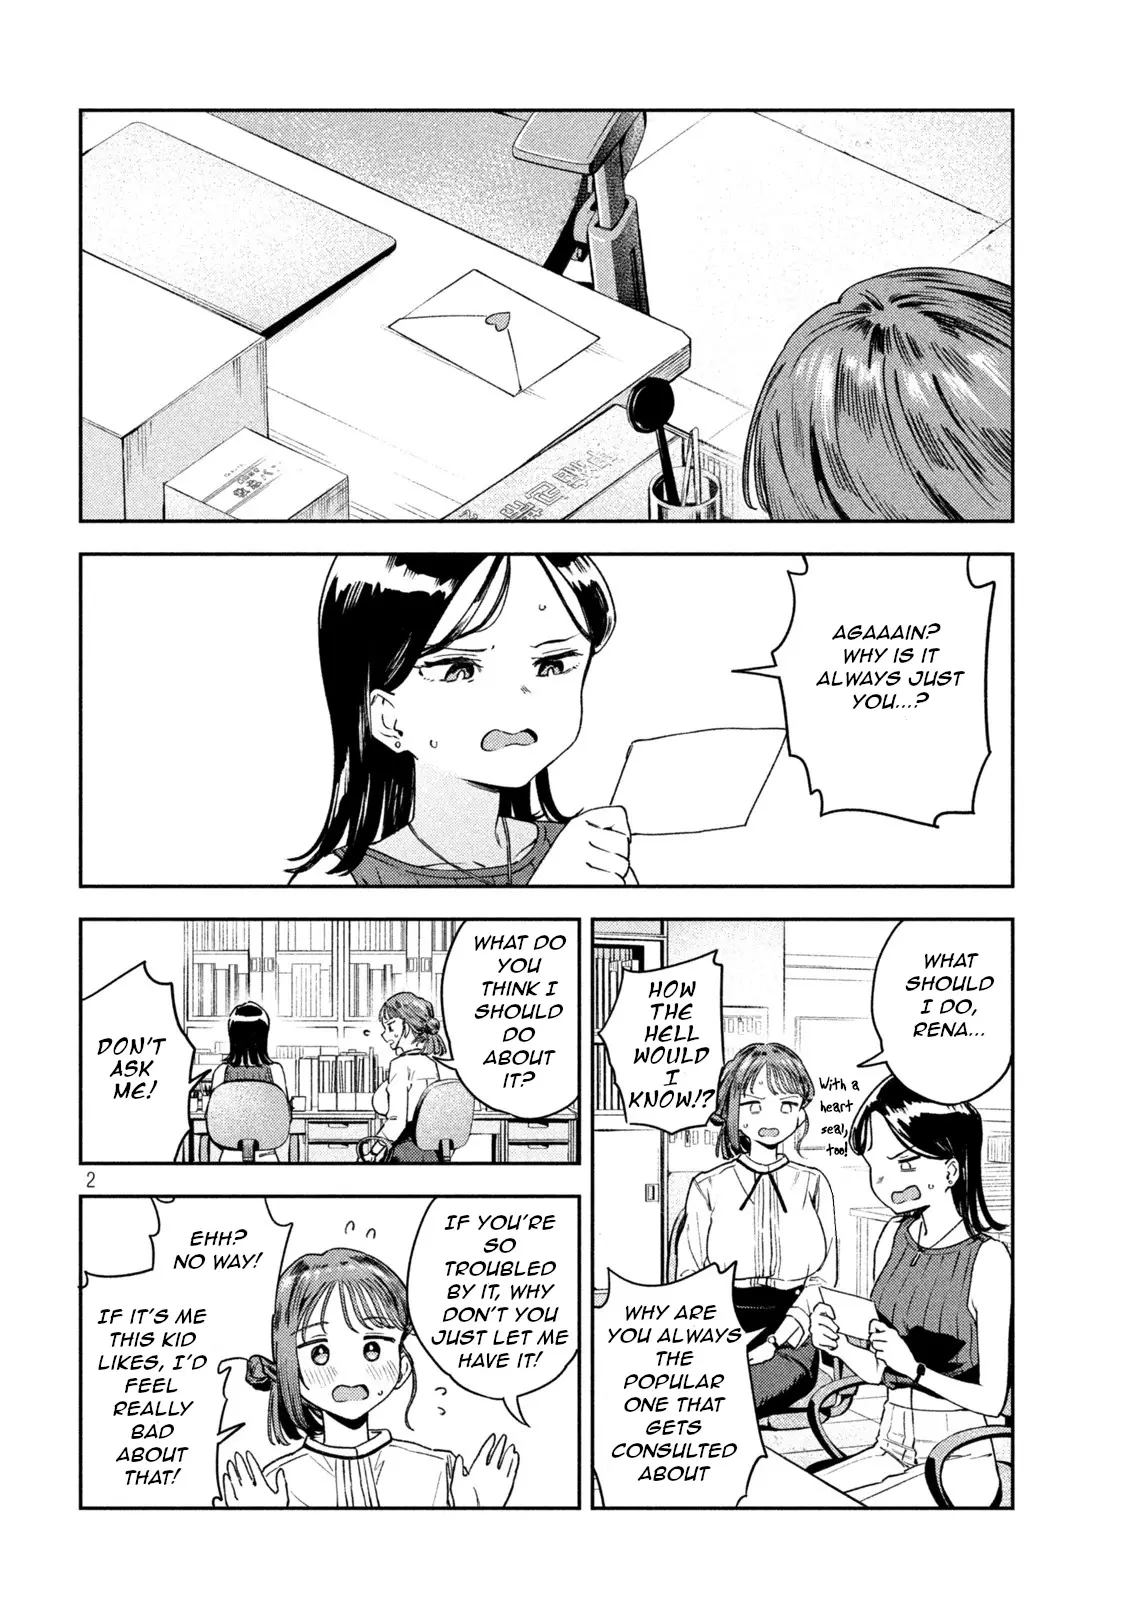 Miyo-Chan Sensei Said So - 5 page 2-6eed2047